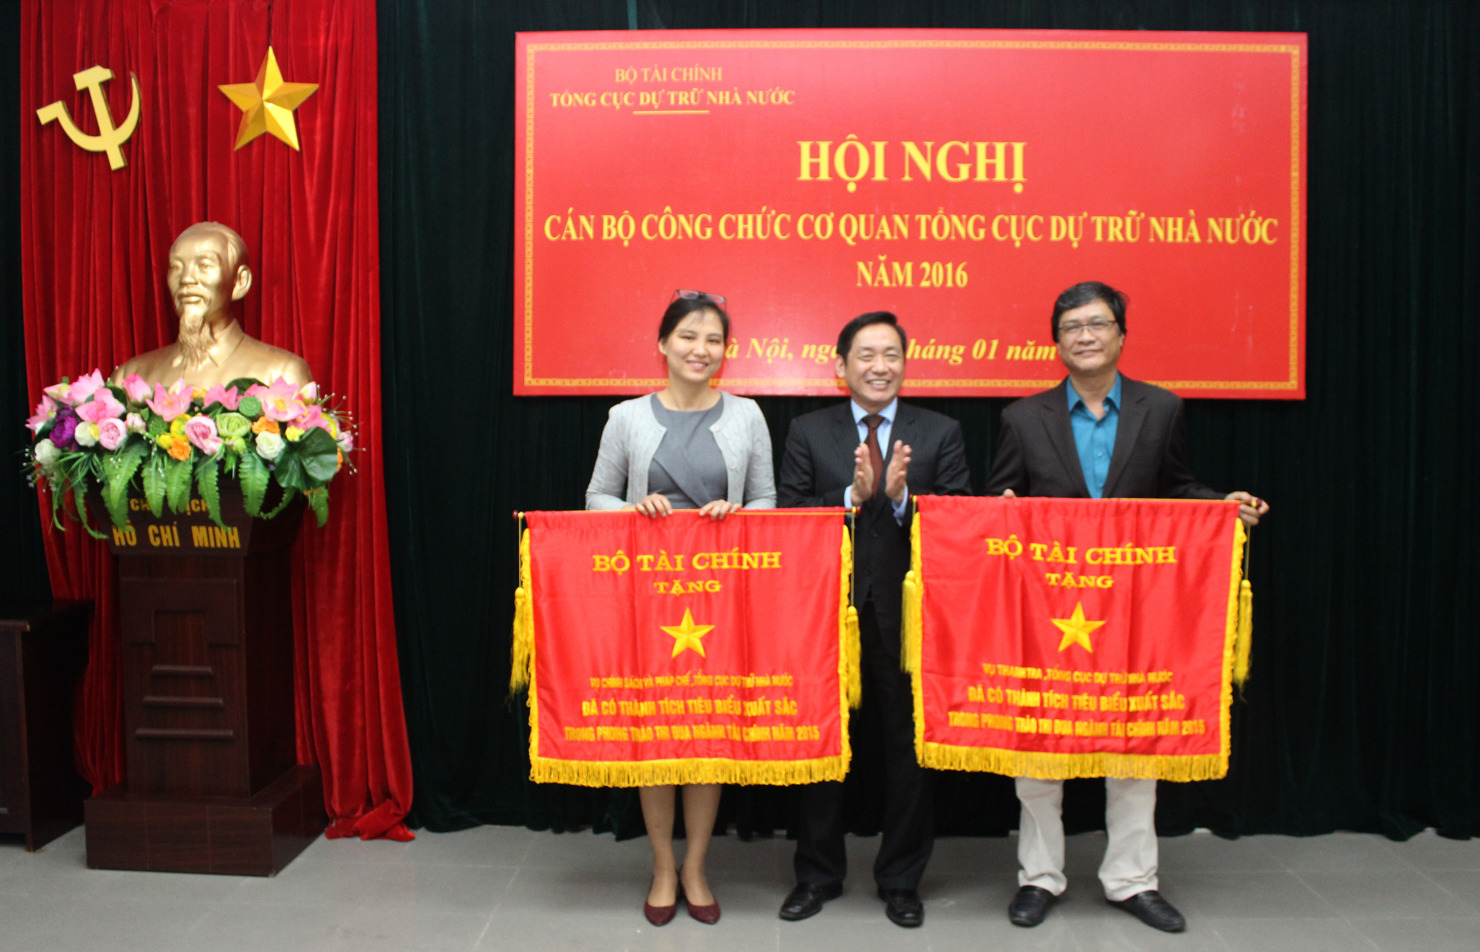 Thừa Ủy quyền của Bộ trưởng Bộ Tài chính, Tổng cục trưởng Tổng cục Dự trữ Nhà nước Phạm Phan Dũng trao tặng Cờ thi đua của Bộ Tài chính cho các tập thể thuộc cơ quan Tổng cục DTNN có thành tích tiêu biểu xuất sắc năm 2016.